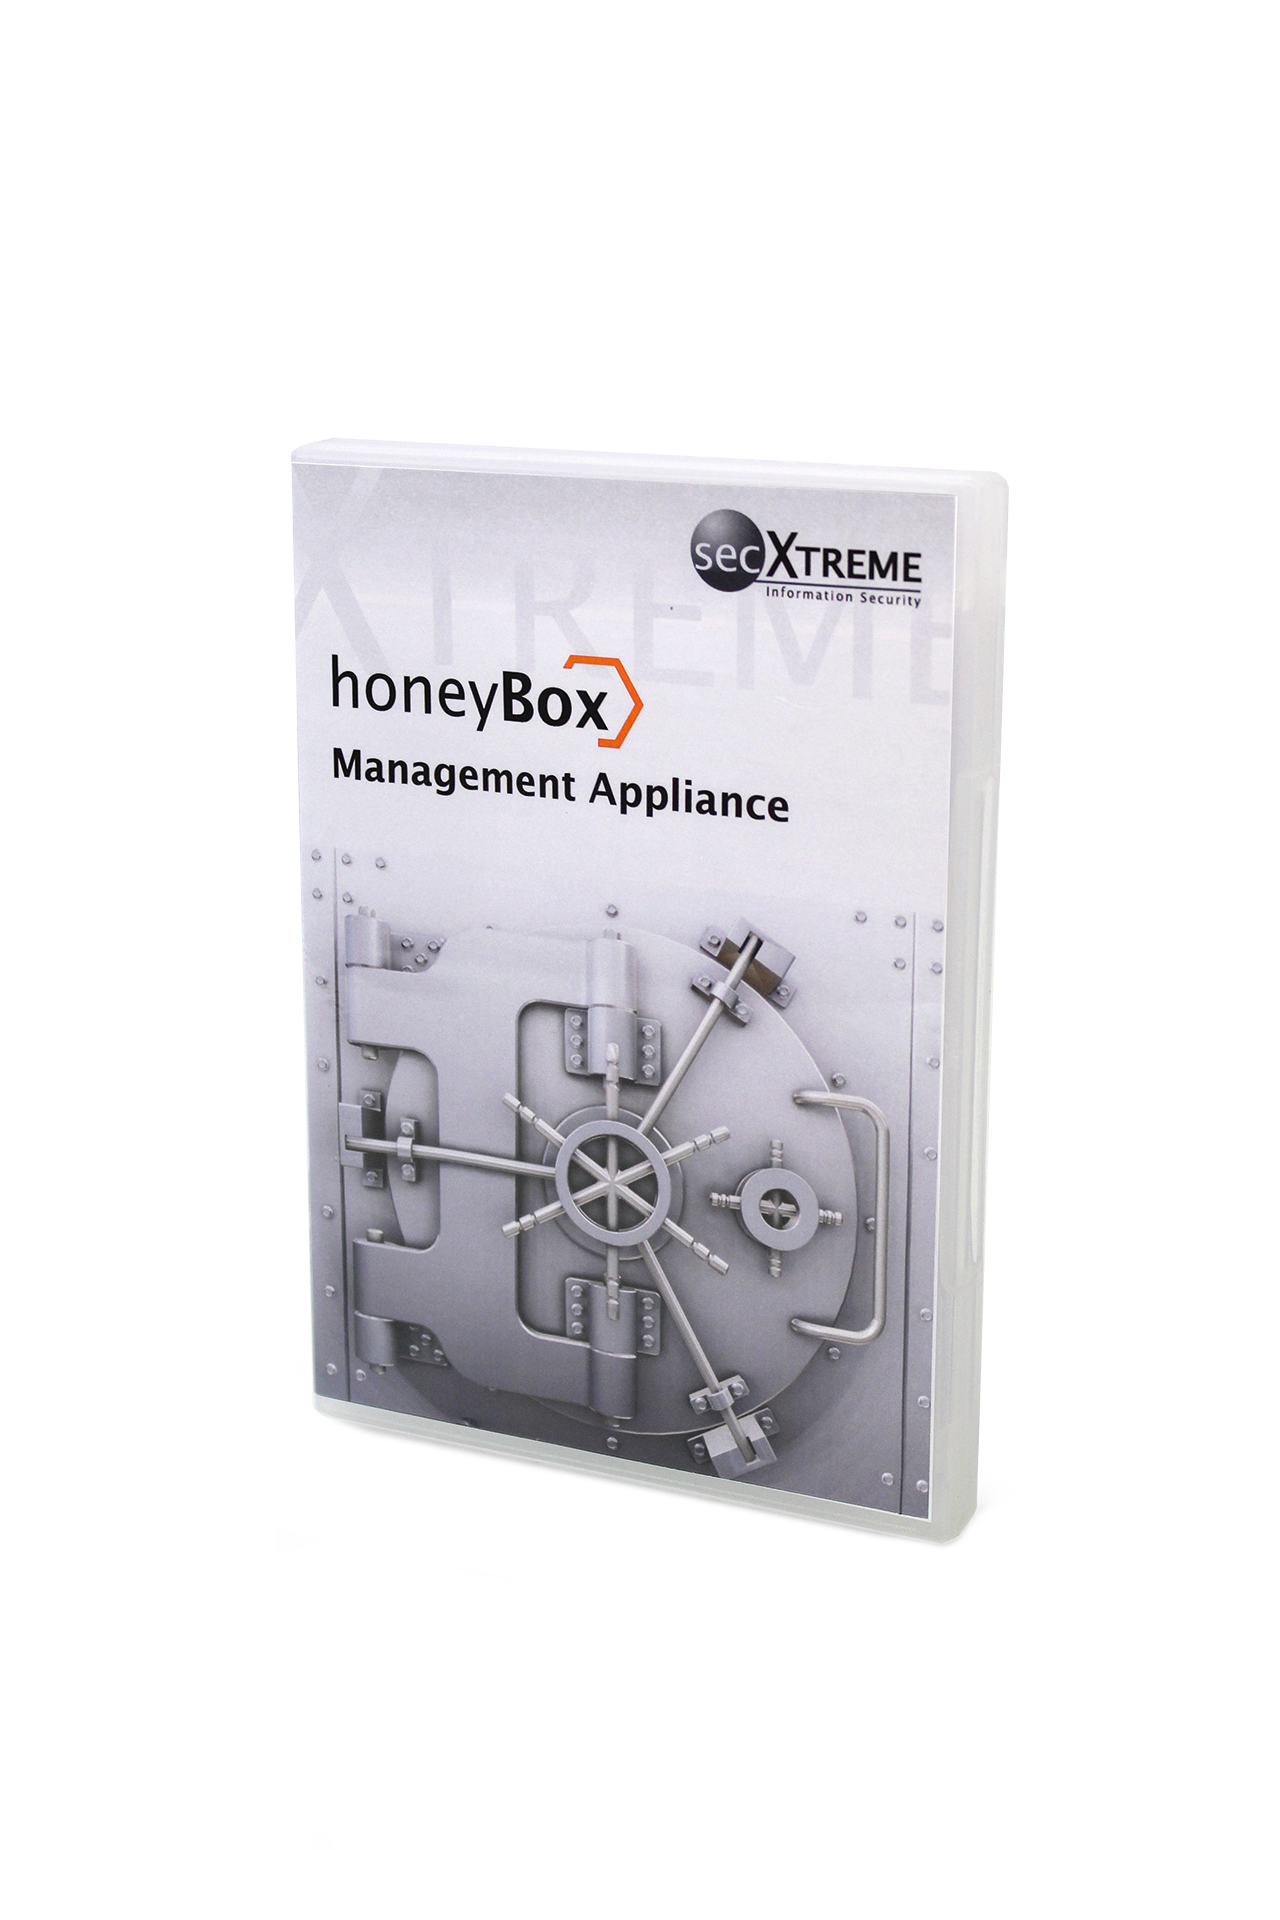 honeyBox Software Management